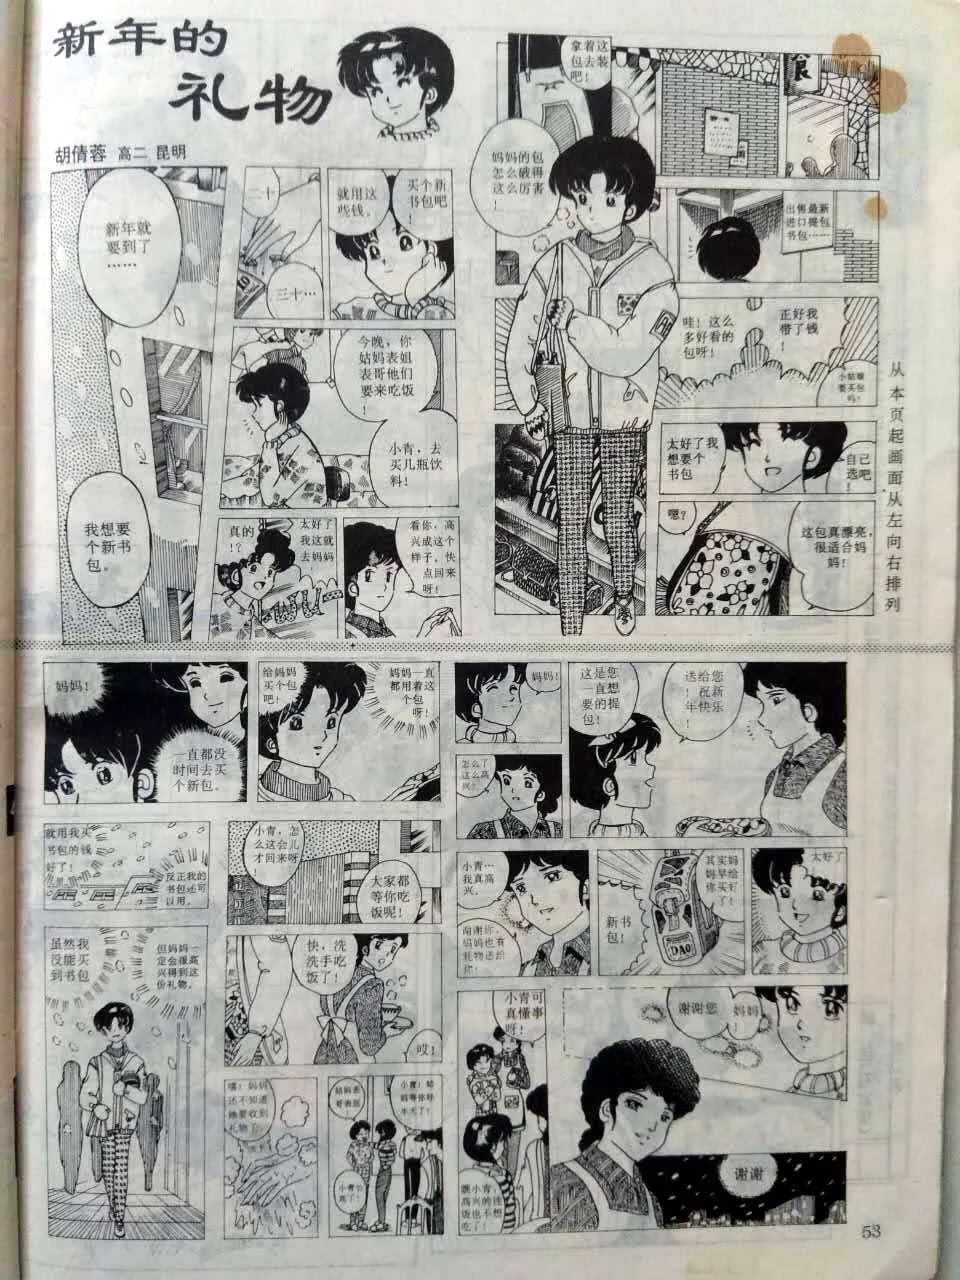 这本杂志只活了1岁 却让一代人见过中国漫画最好的时光 蹦迪班长 微信公众号文章阅读 Wemp